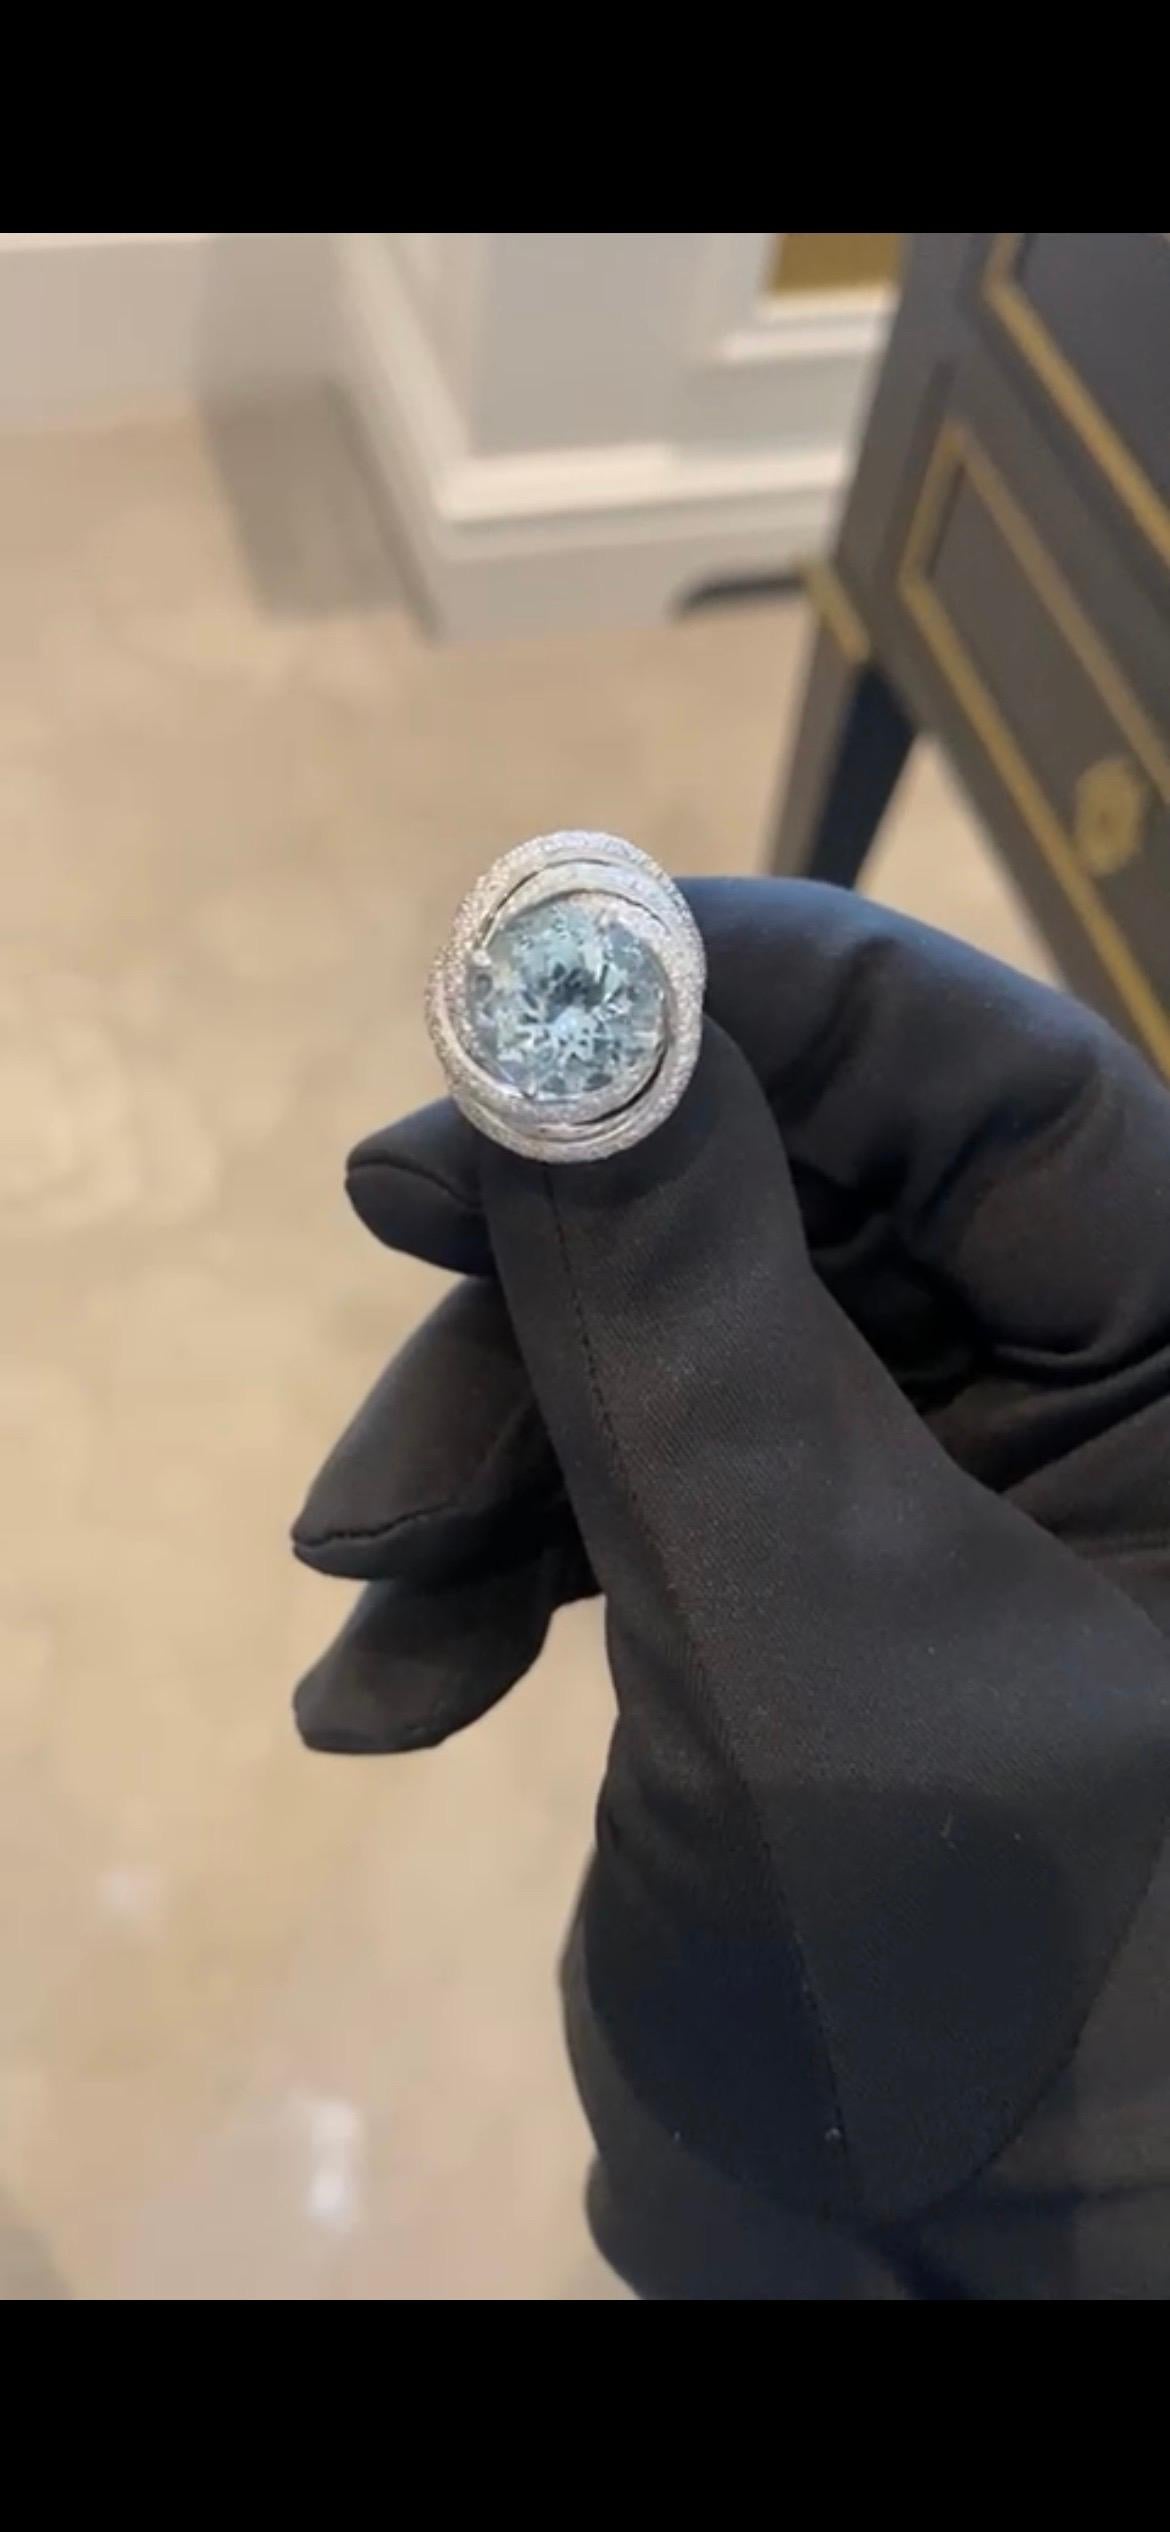 Très rare bague aigue-marine et diamant de Cartier 

Aigue-marine 5,76 carats 

272 diamants de 1,92 carat